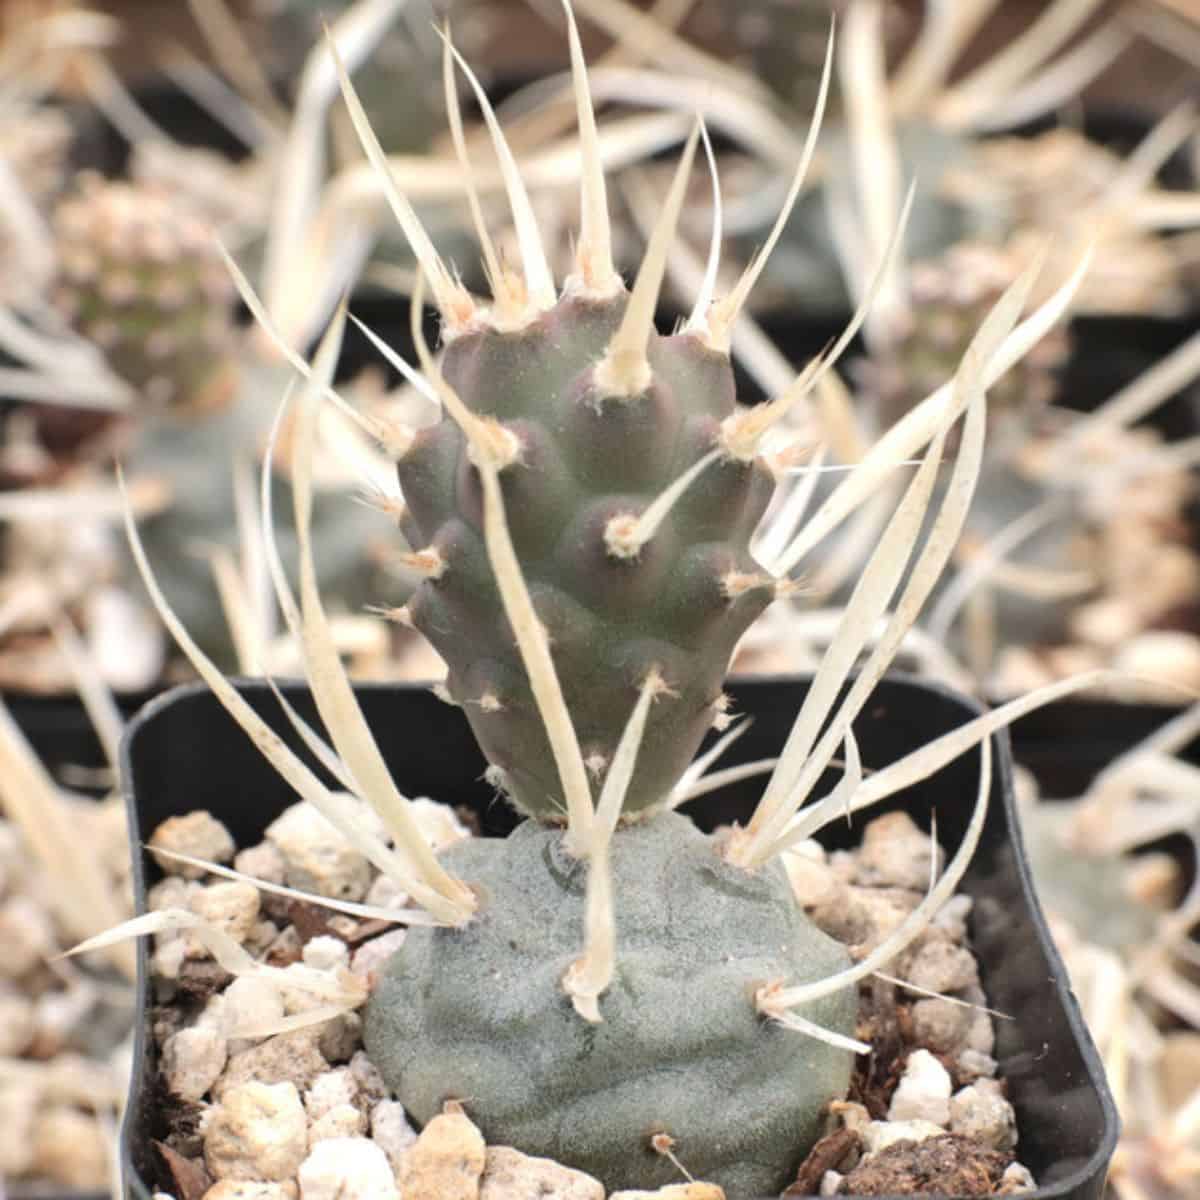 Tephrocactus articulatus v. papyracanthus – Paper Spine Cactus